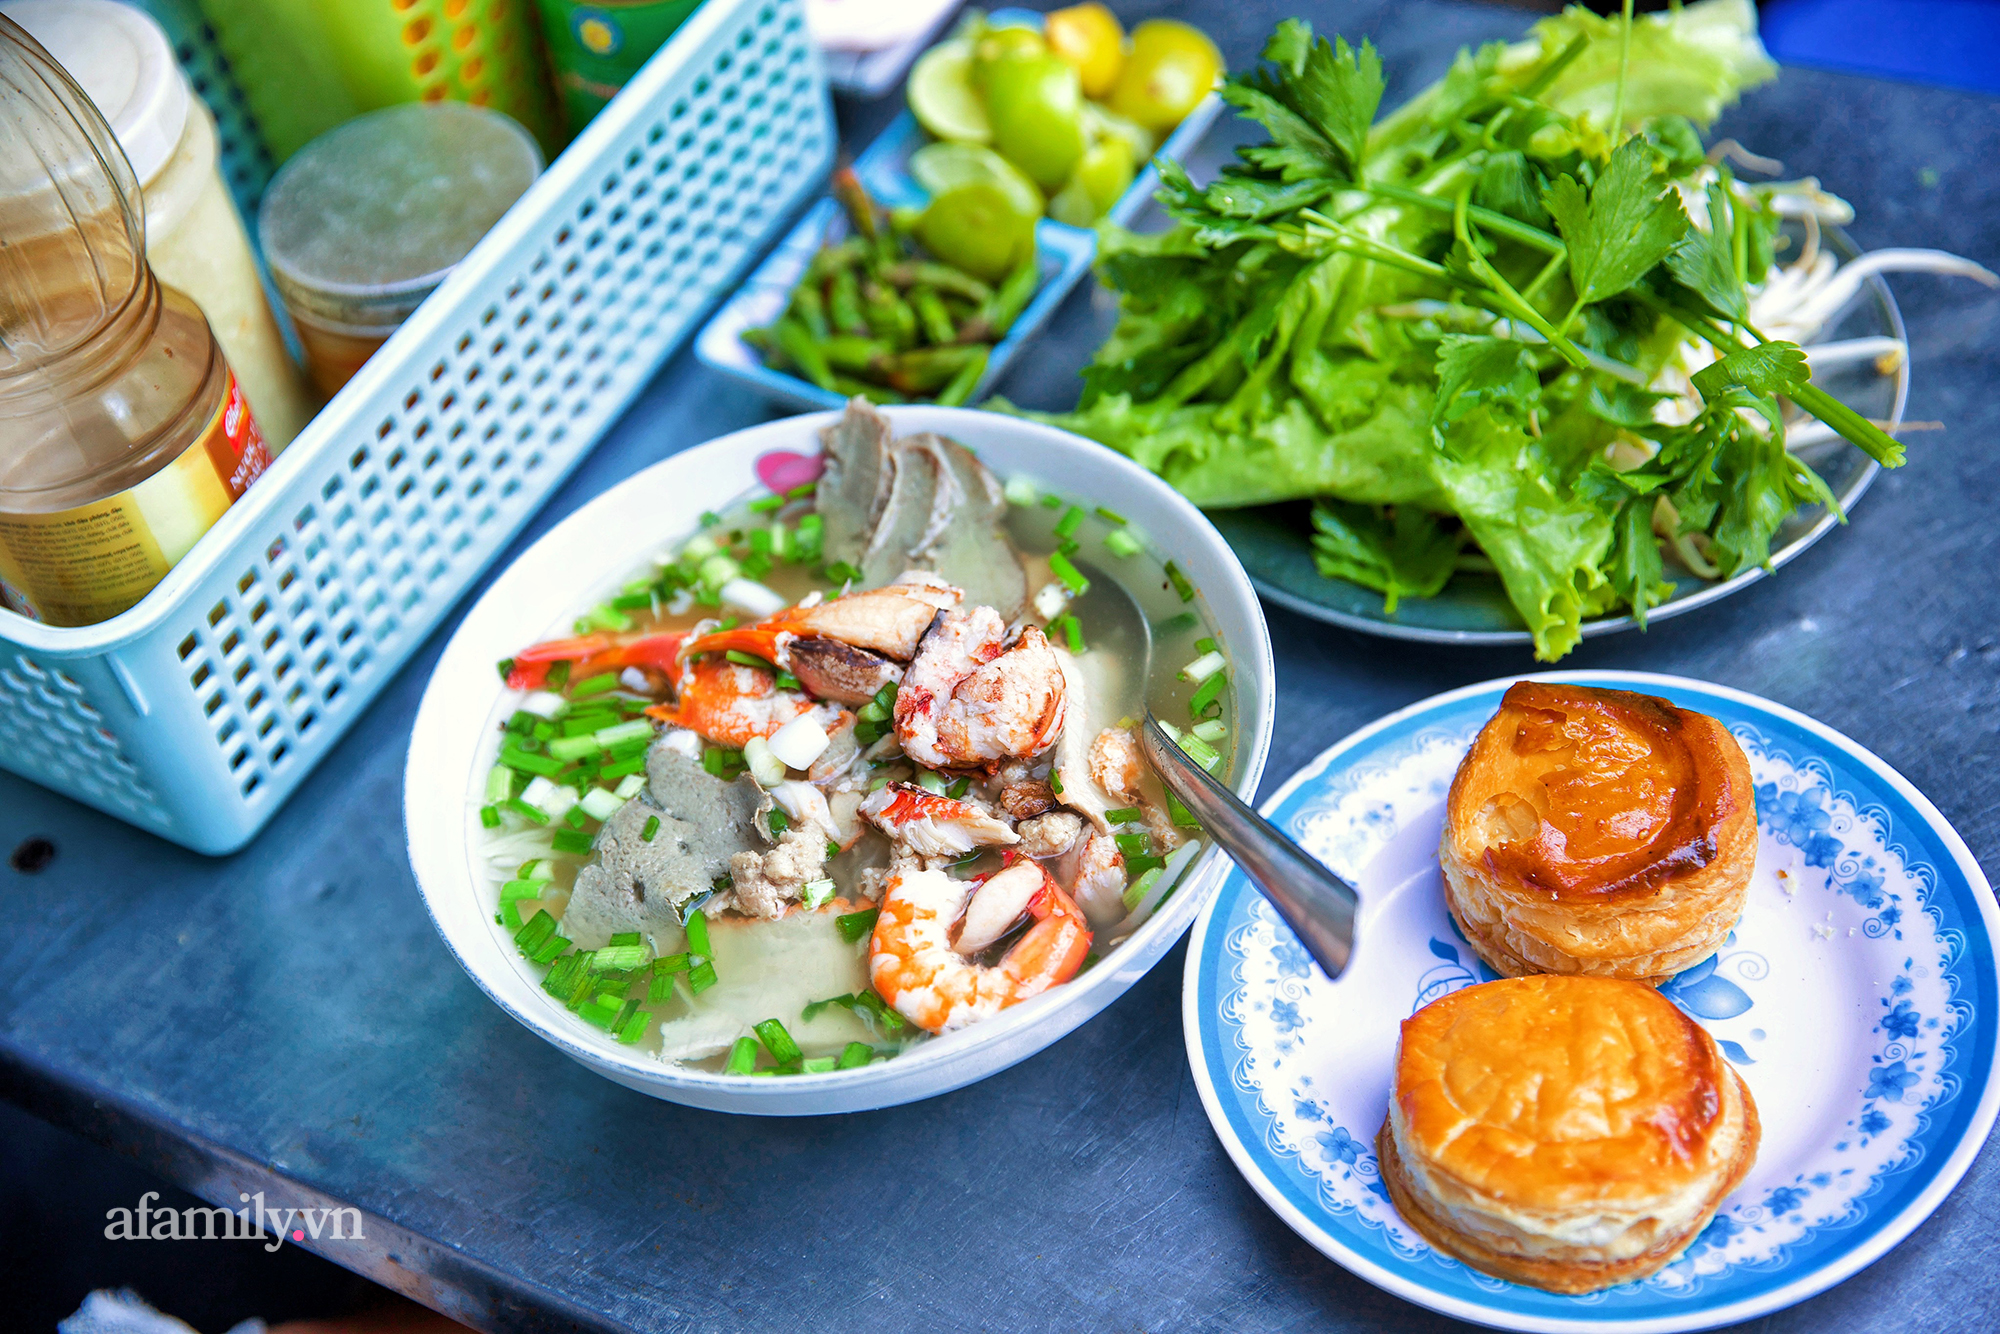 Tiệm hủ tiếu hơn 70 năm nổi tiếng với nồi sốt cà chua hầm cả Sài Gòn không đâu có, sở hữu tấm bảng hiệu được "định giá" nghìn đô và món bánh Pháp "phải siêng mới được ăn!?" - Ảnh 10.